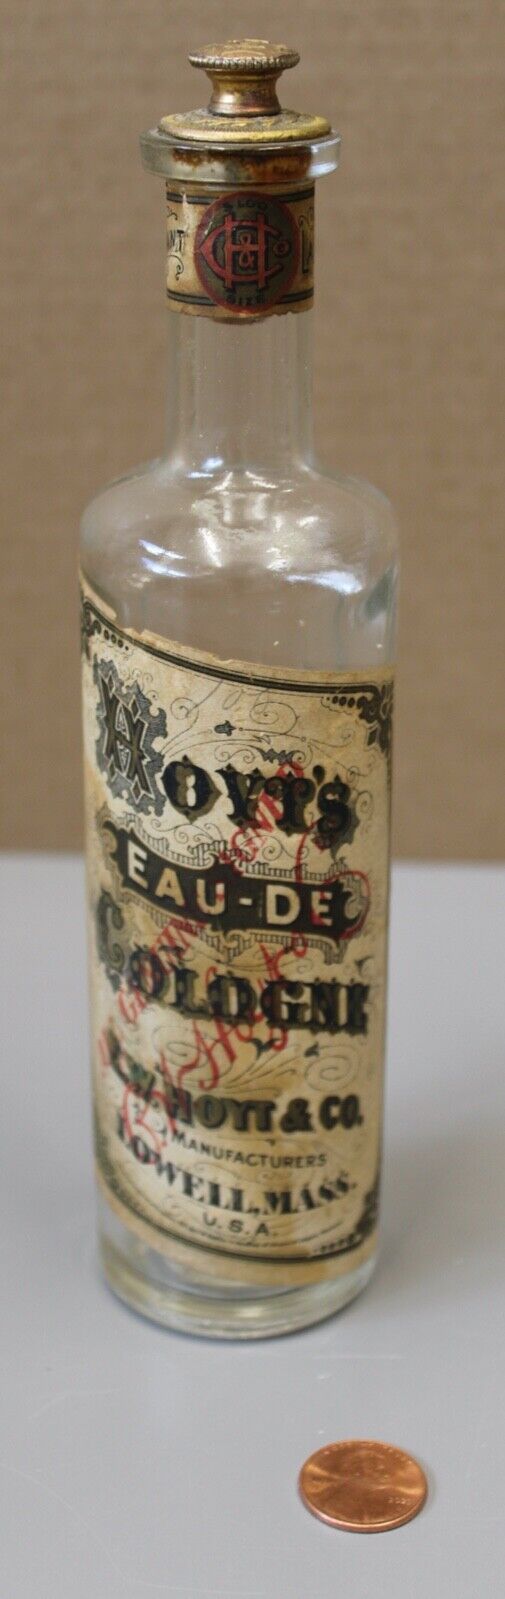 07/05.  Hoyt\'s Eau-De Cologne 5oz. Glass Bottle with Original Stopper and Label